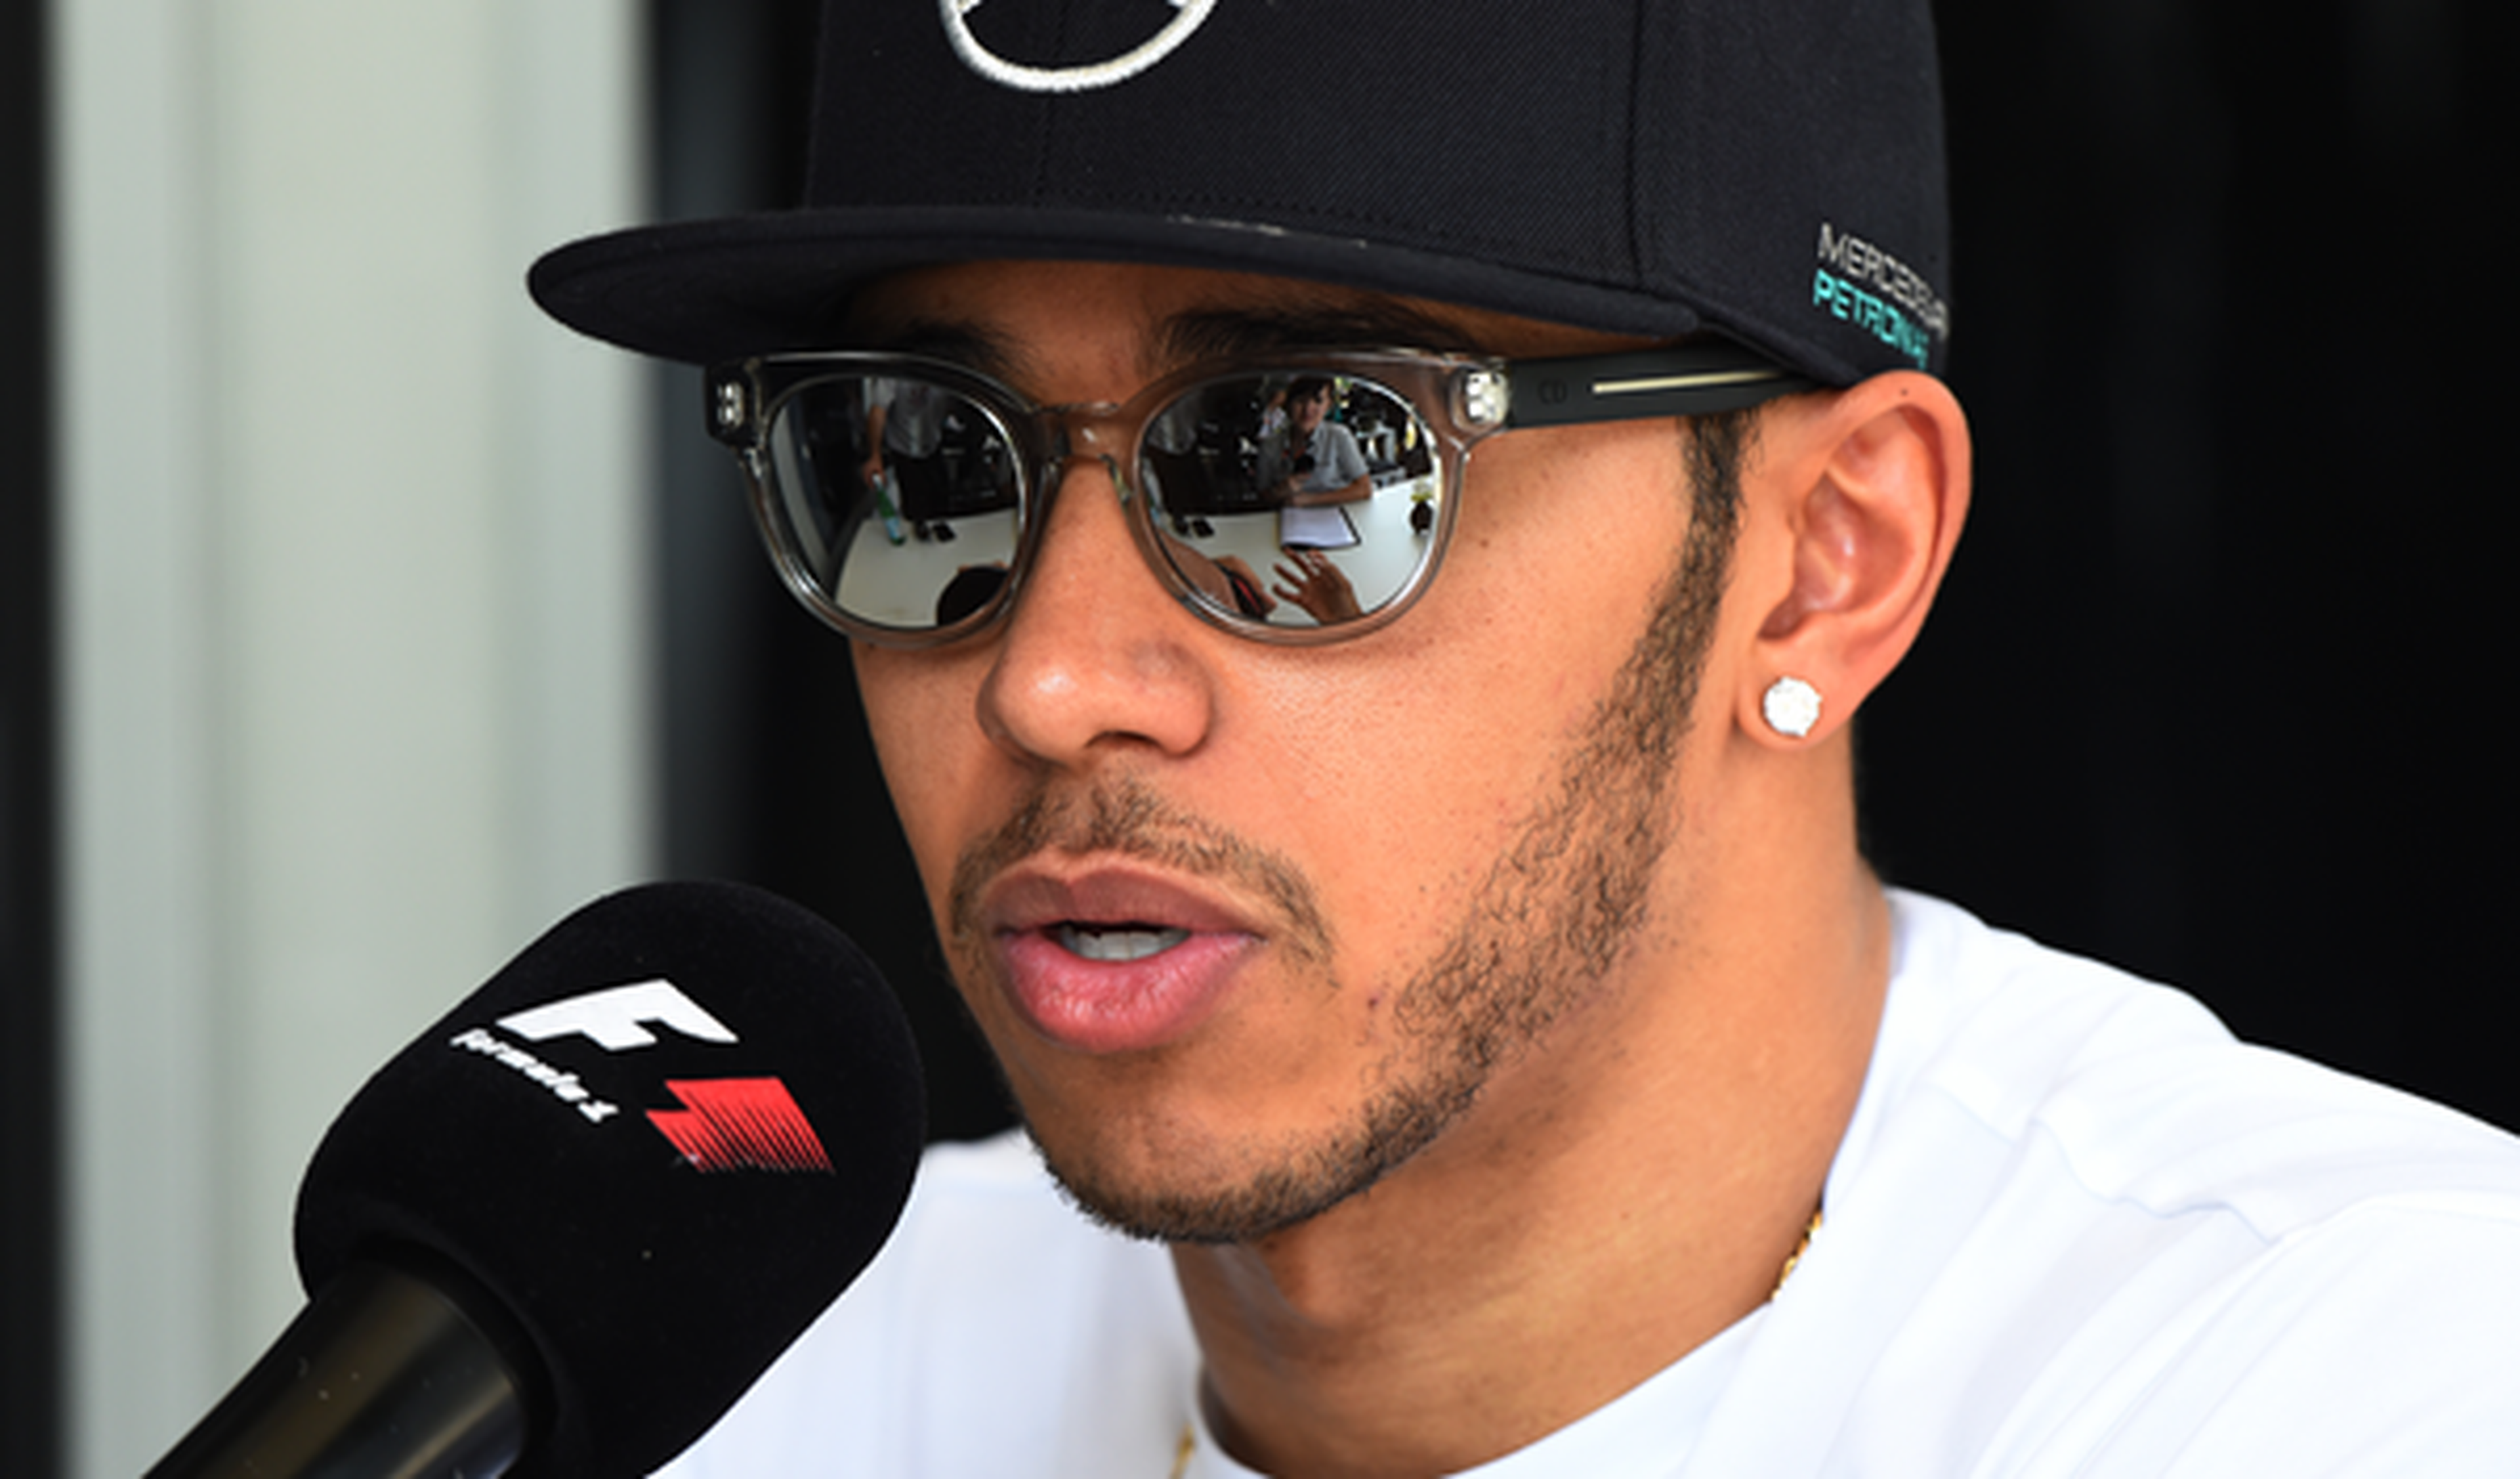 A Hamilton le parecen divertidas las quejas de Red Bull